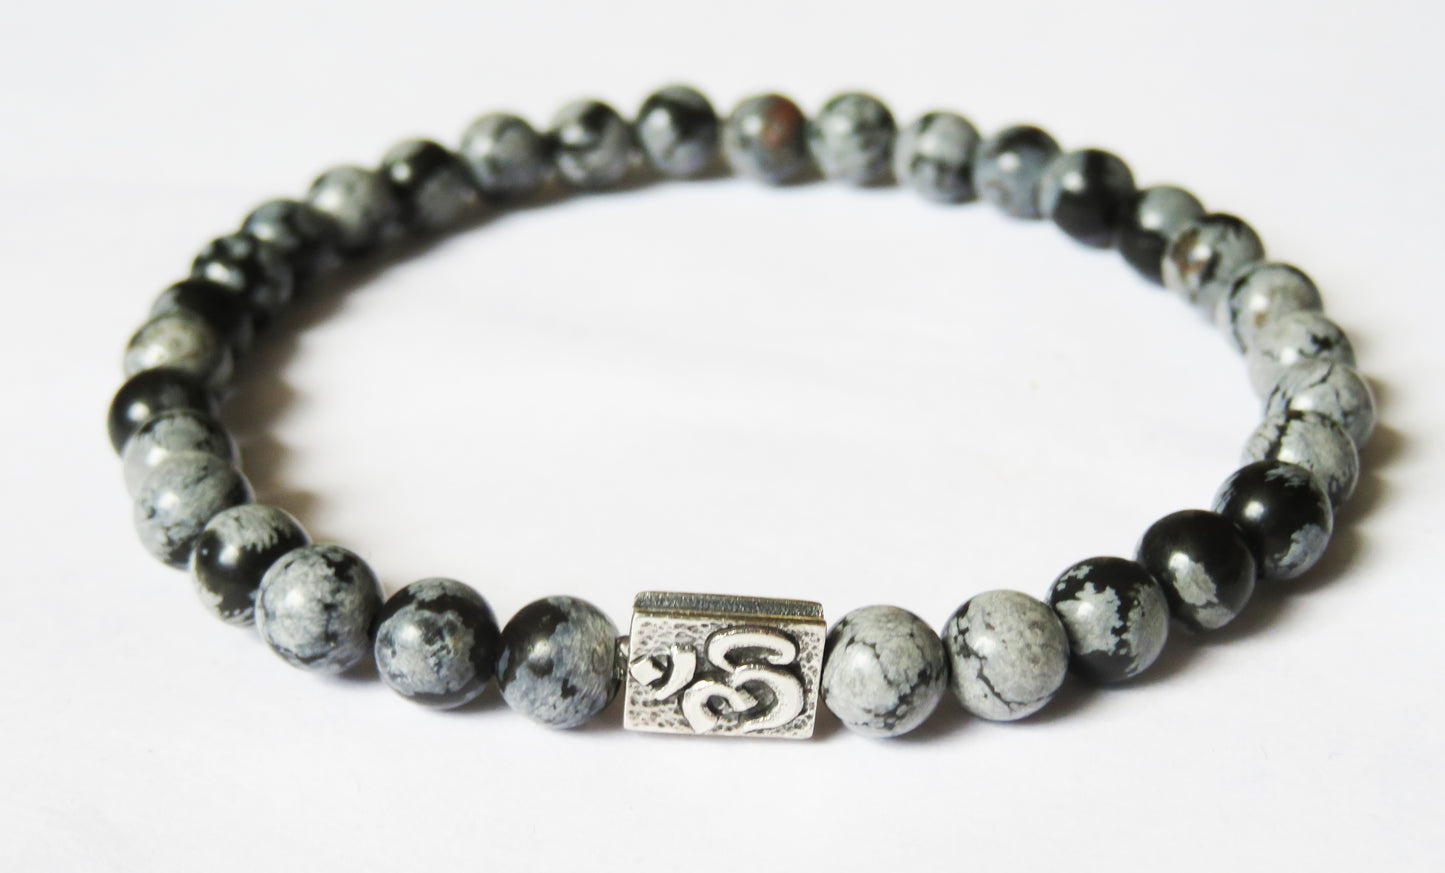 Vločkový obsidián so strieborným harmonizačným doplnkom / Flake obsidian bracelet with silver harmonizing bead